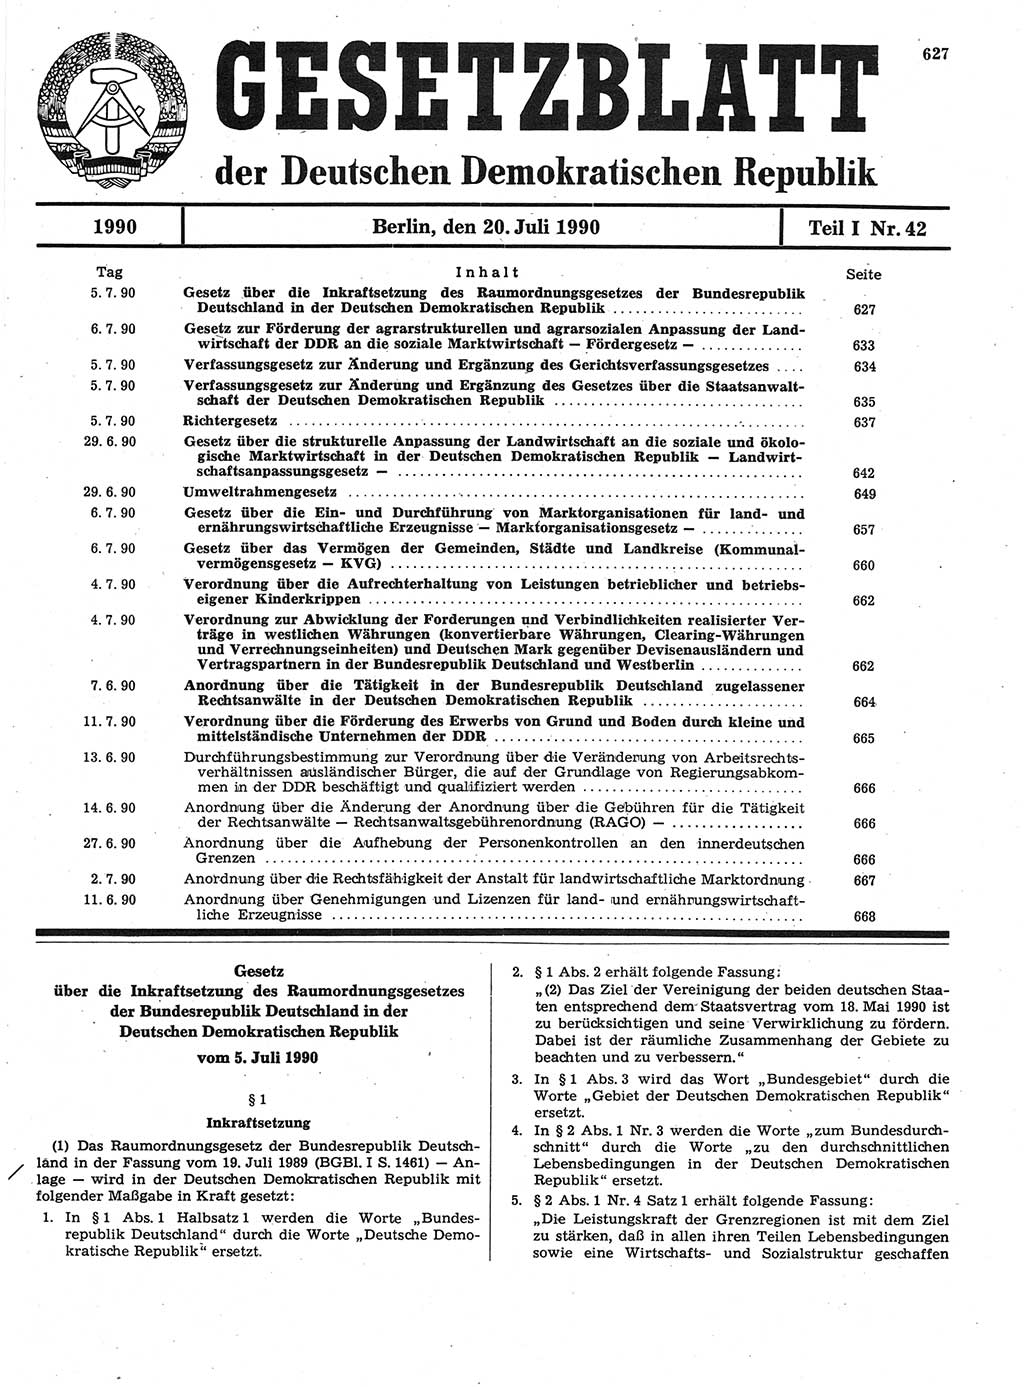 Gesetzblatt (GBl.) der Deutschen Demokratischen Republik (DDR) Teil Ⅰ 1990, Seite 627 (GBl. DDR Ⅰ 1990, S. 627)